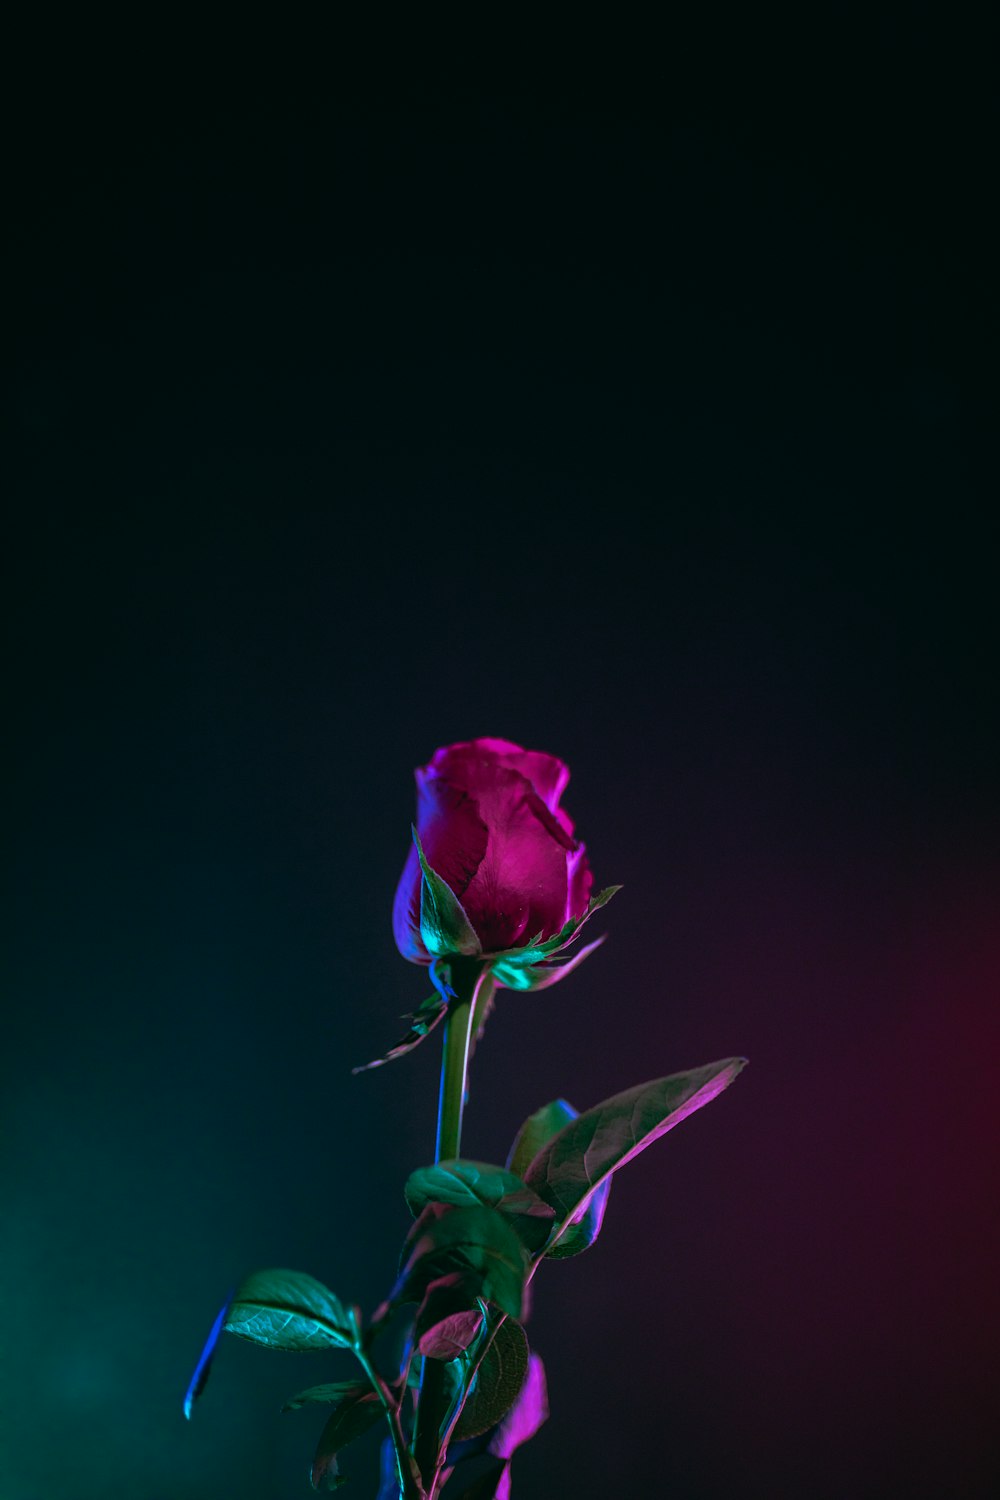 foto de flor de rosa roja en superficie oscura